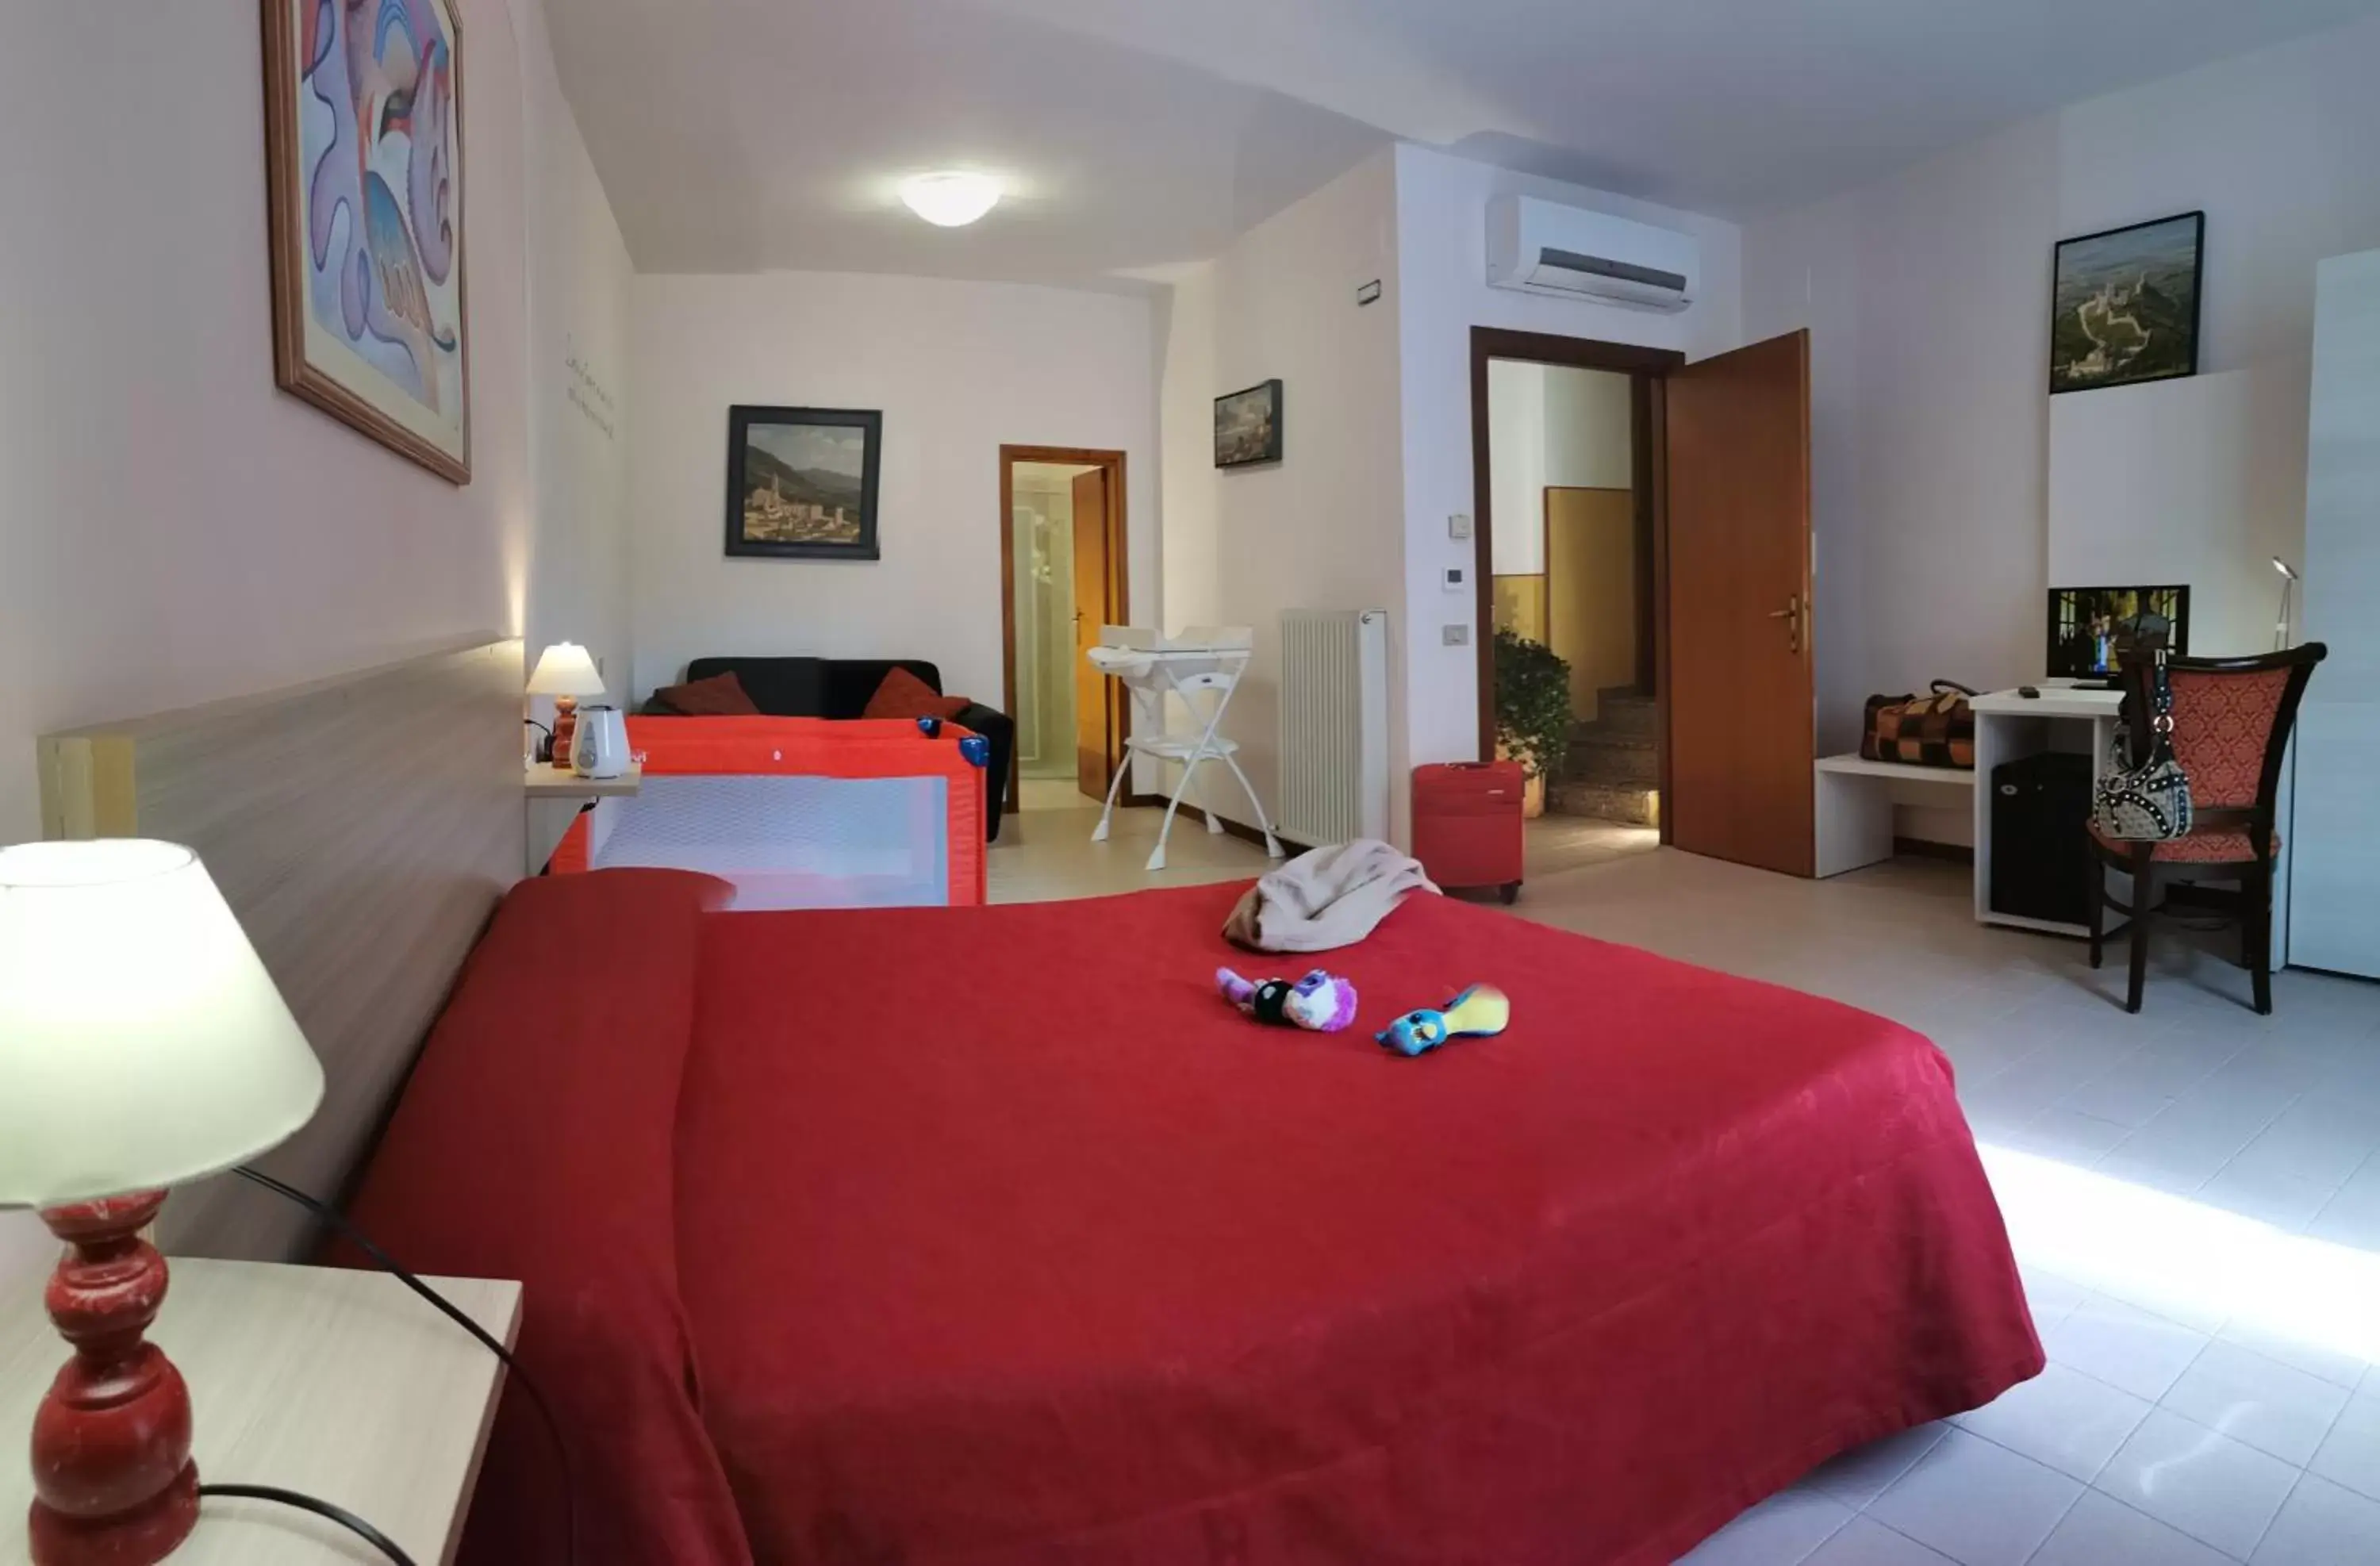 Bedroom in Hotel San Rufino